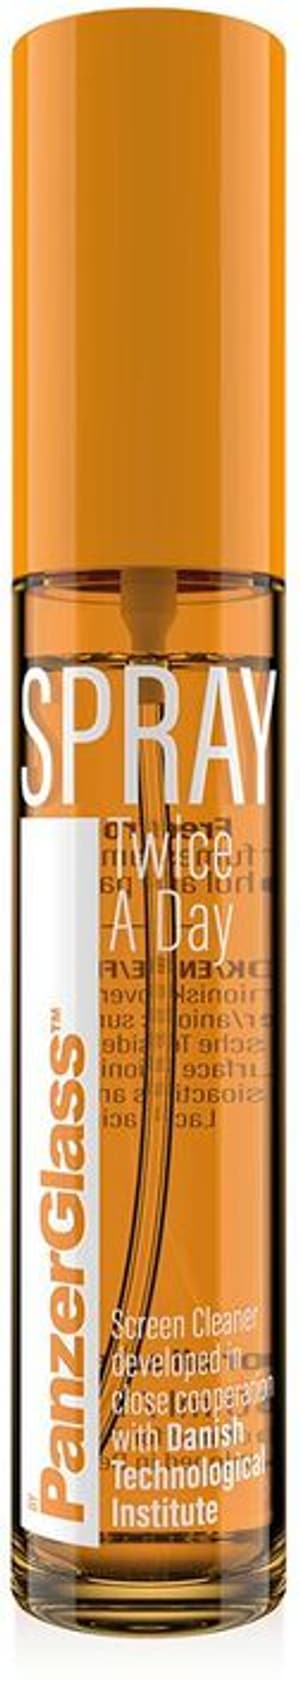 Spray - twice a day 30ml